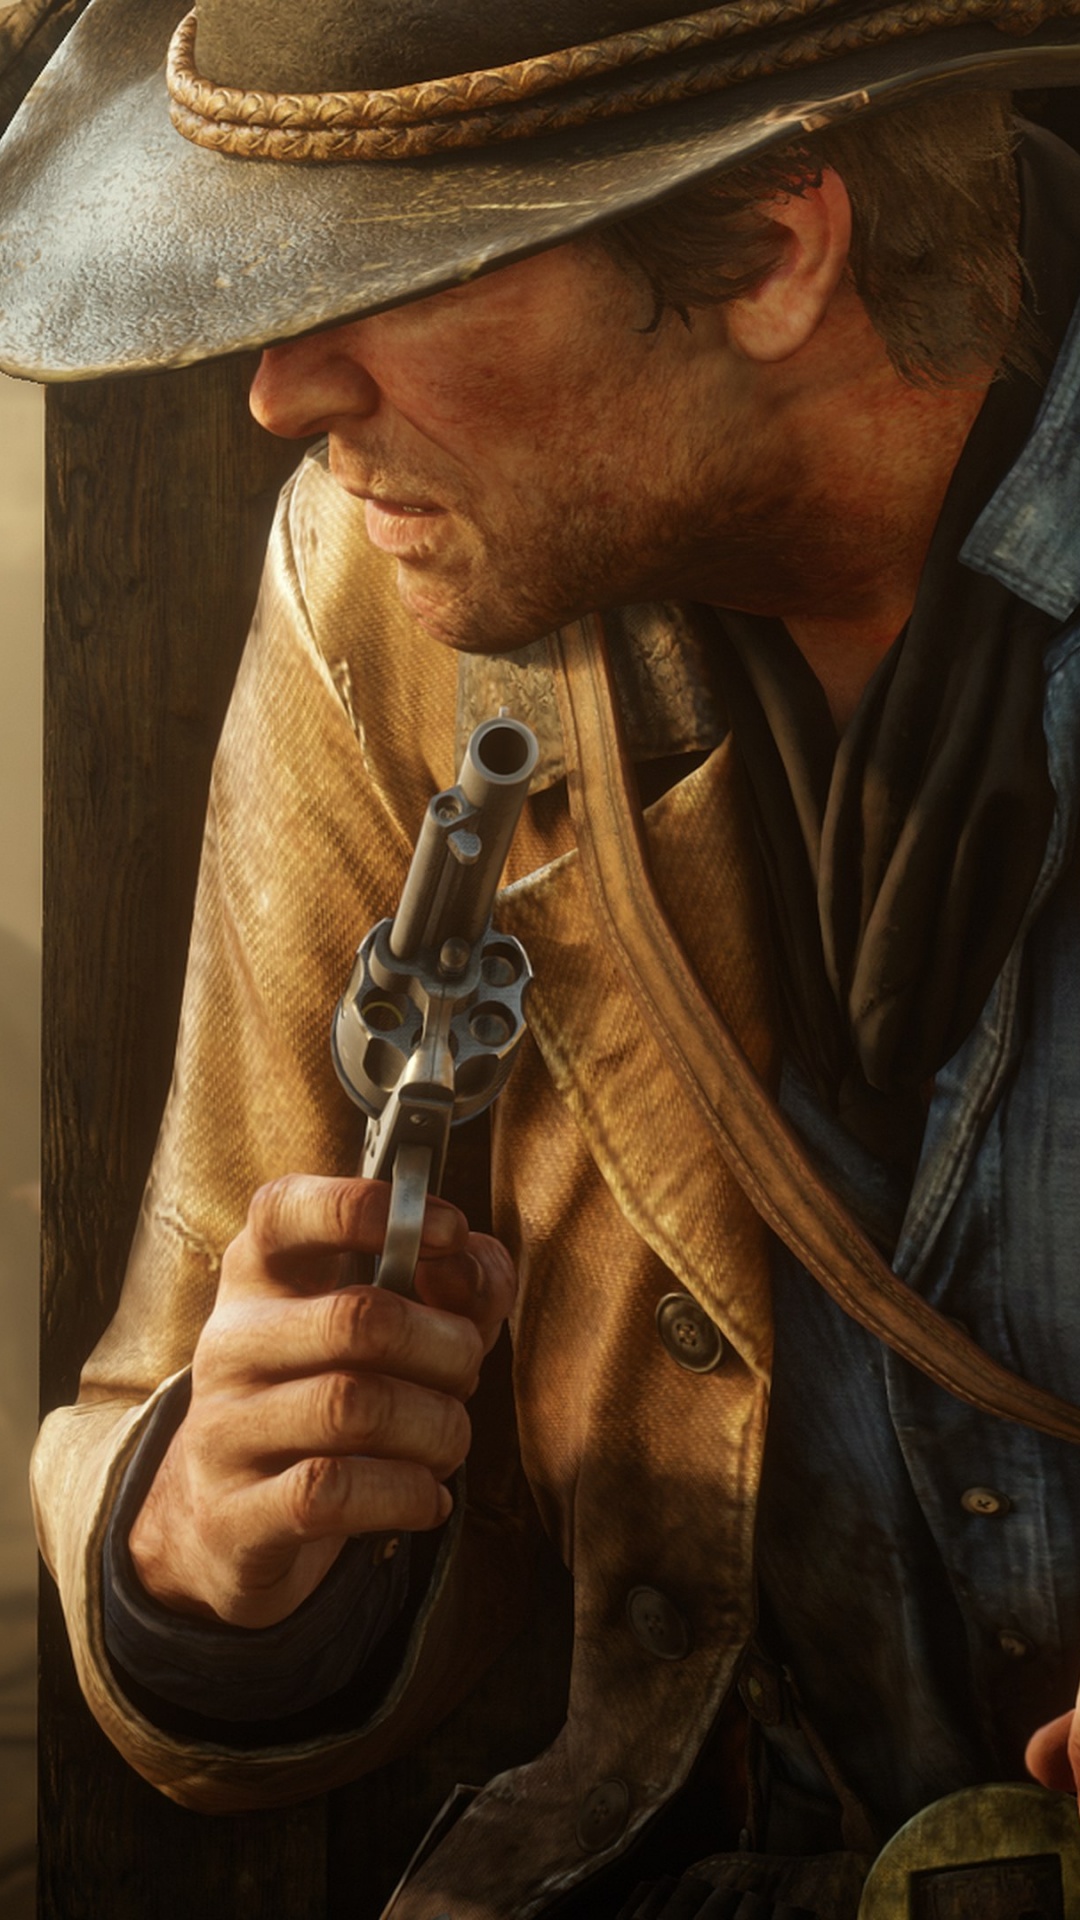 Red Dead Redemption 2, Red Dead Redemption, Rockstar Games, L'homme, Gunfighter. Wallpaper in 1080x1920 Resolution